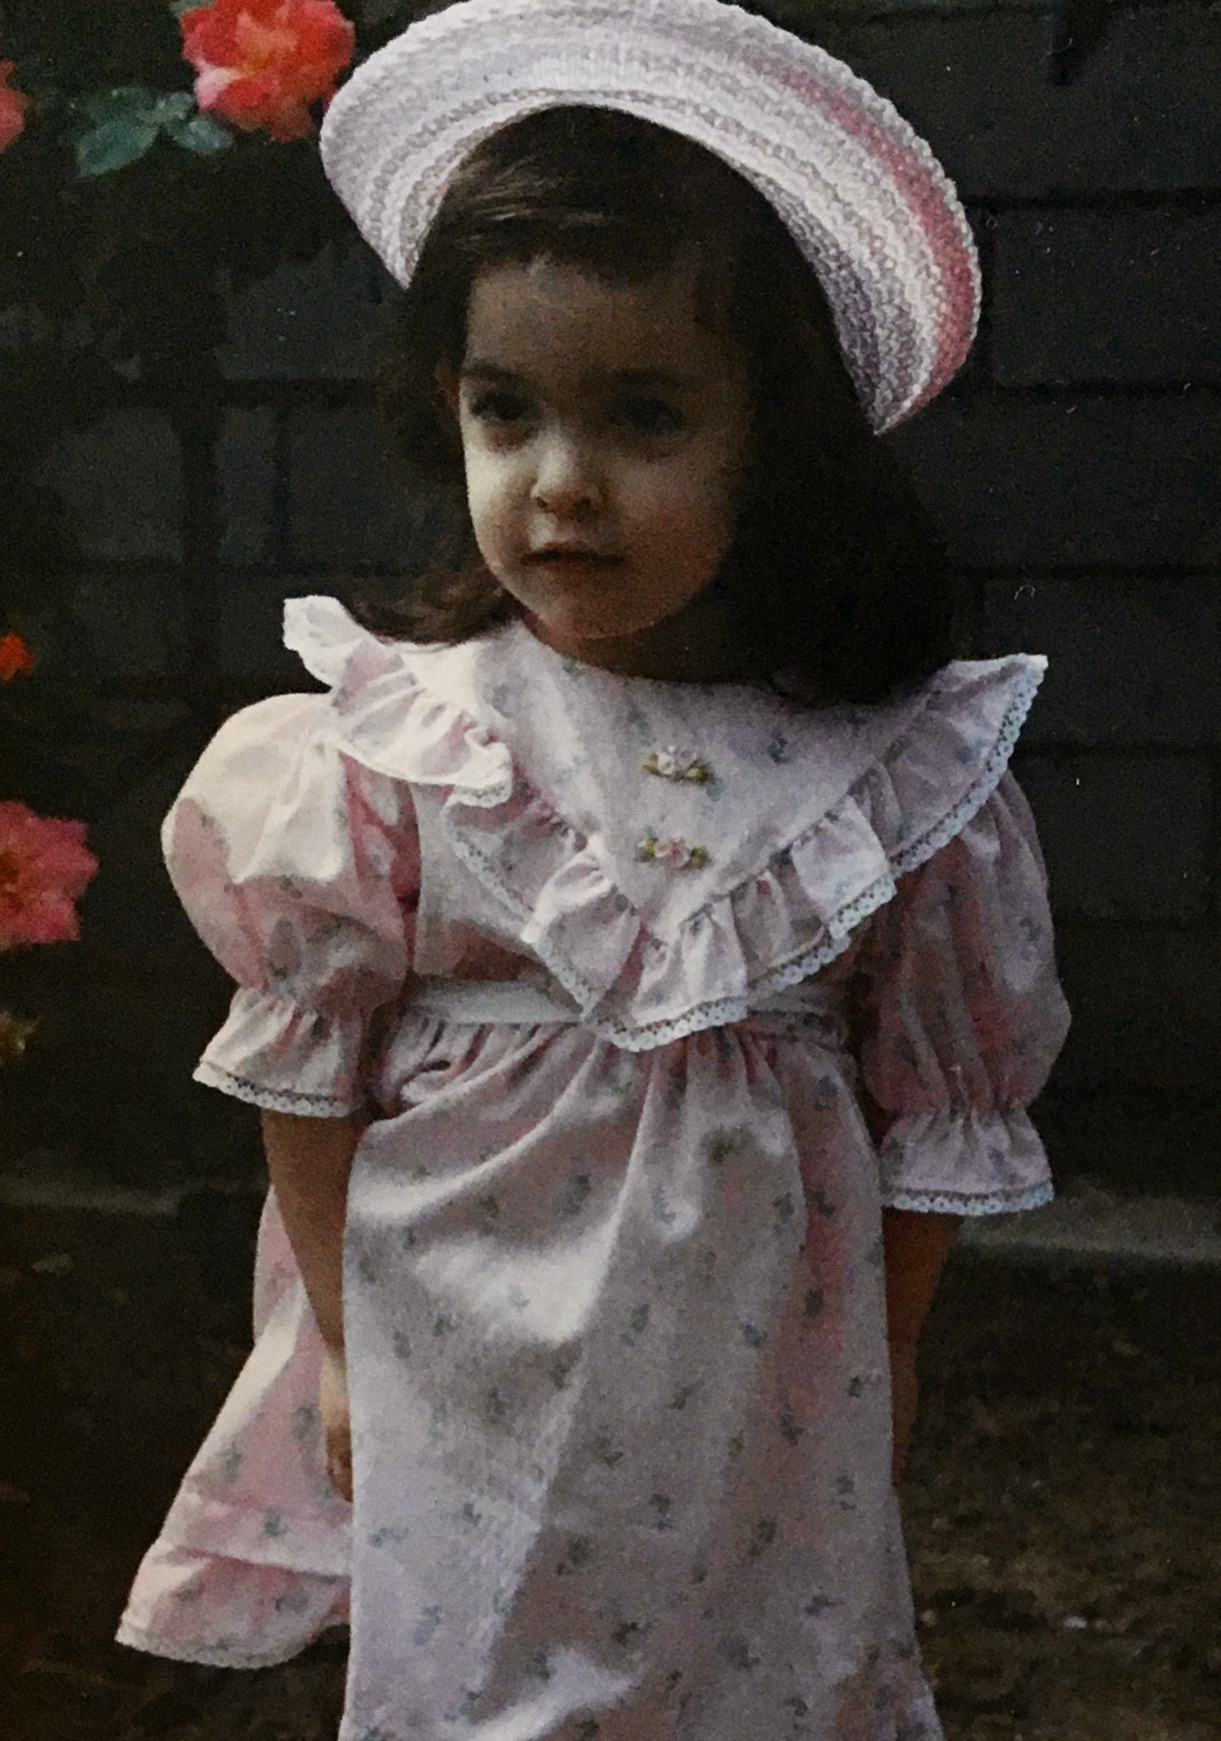 Carolyn Rodriguez on Easter Sunday, c. 1990